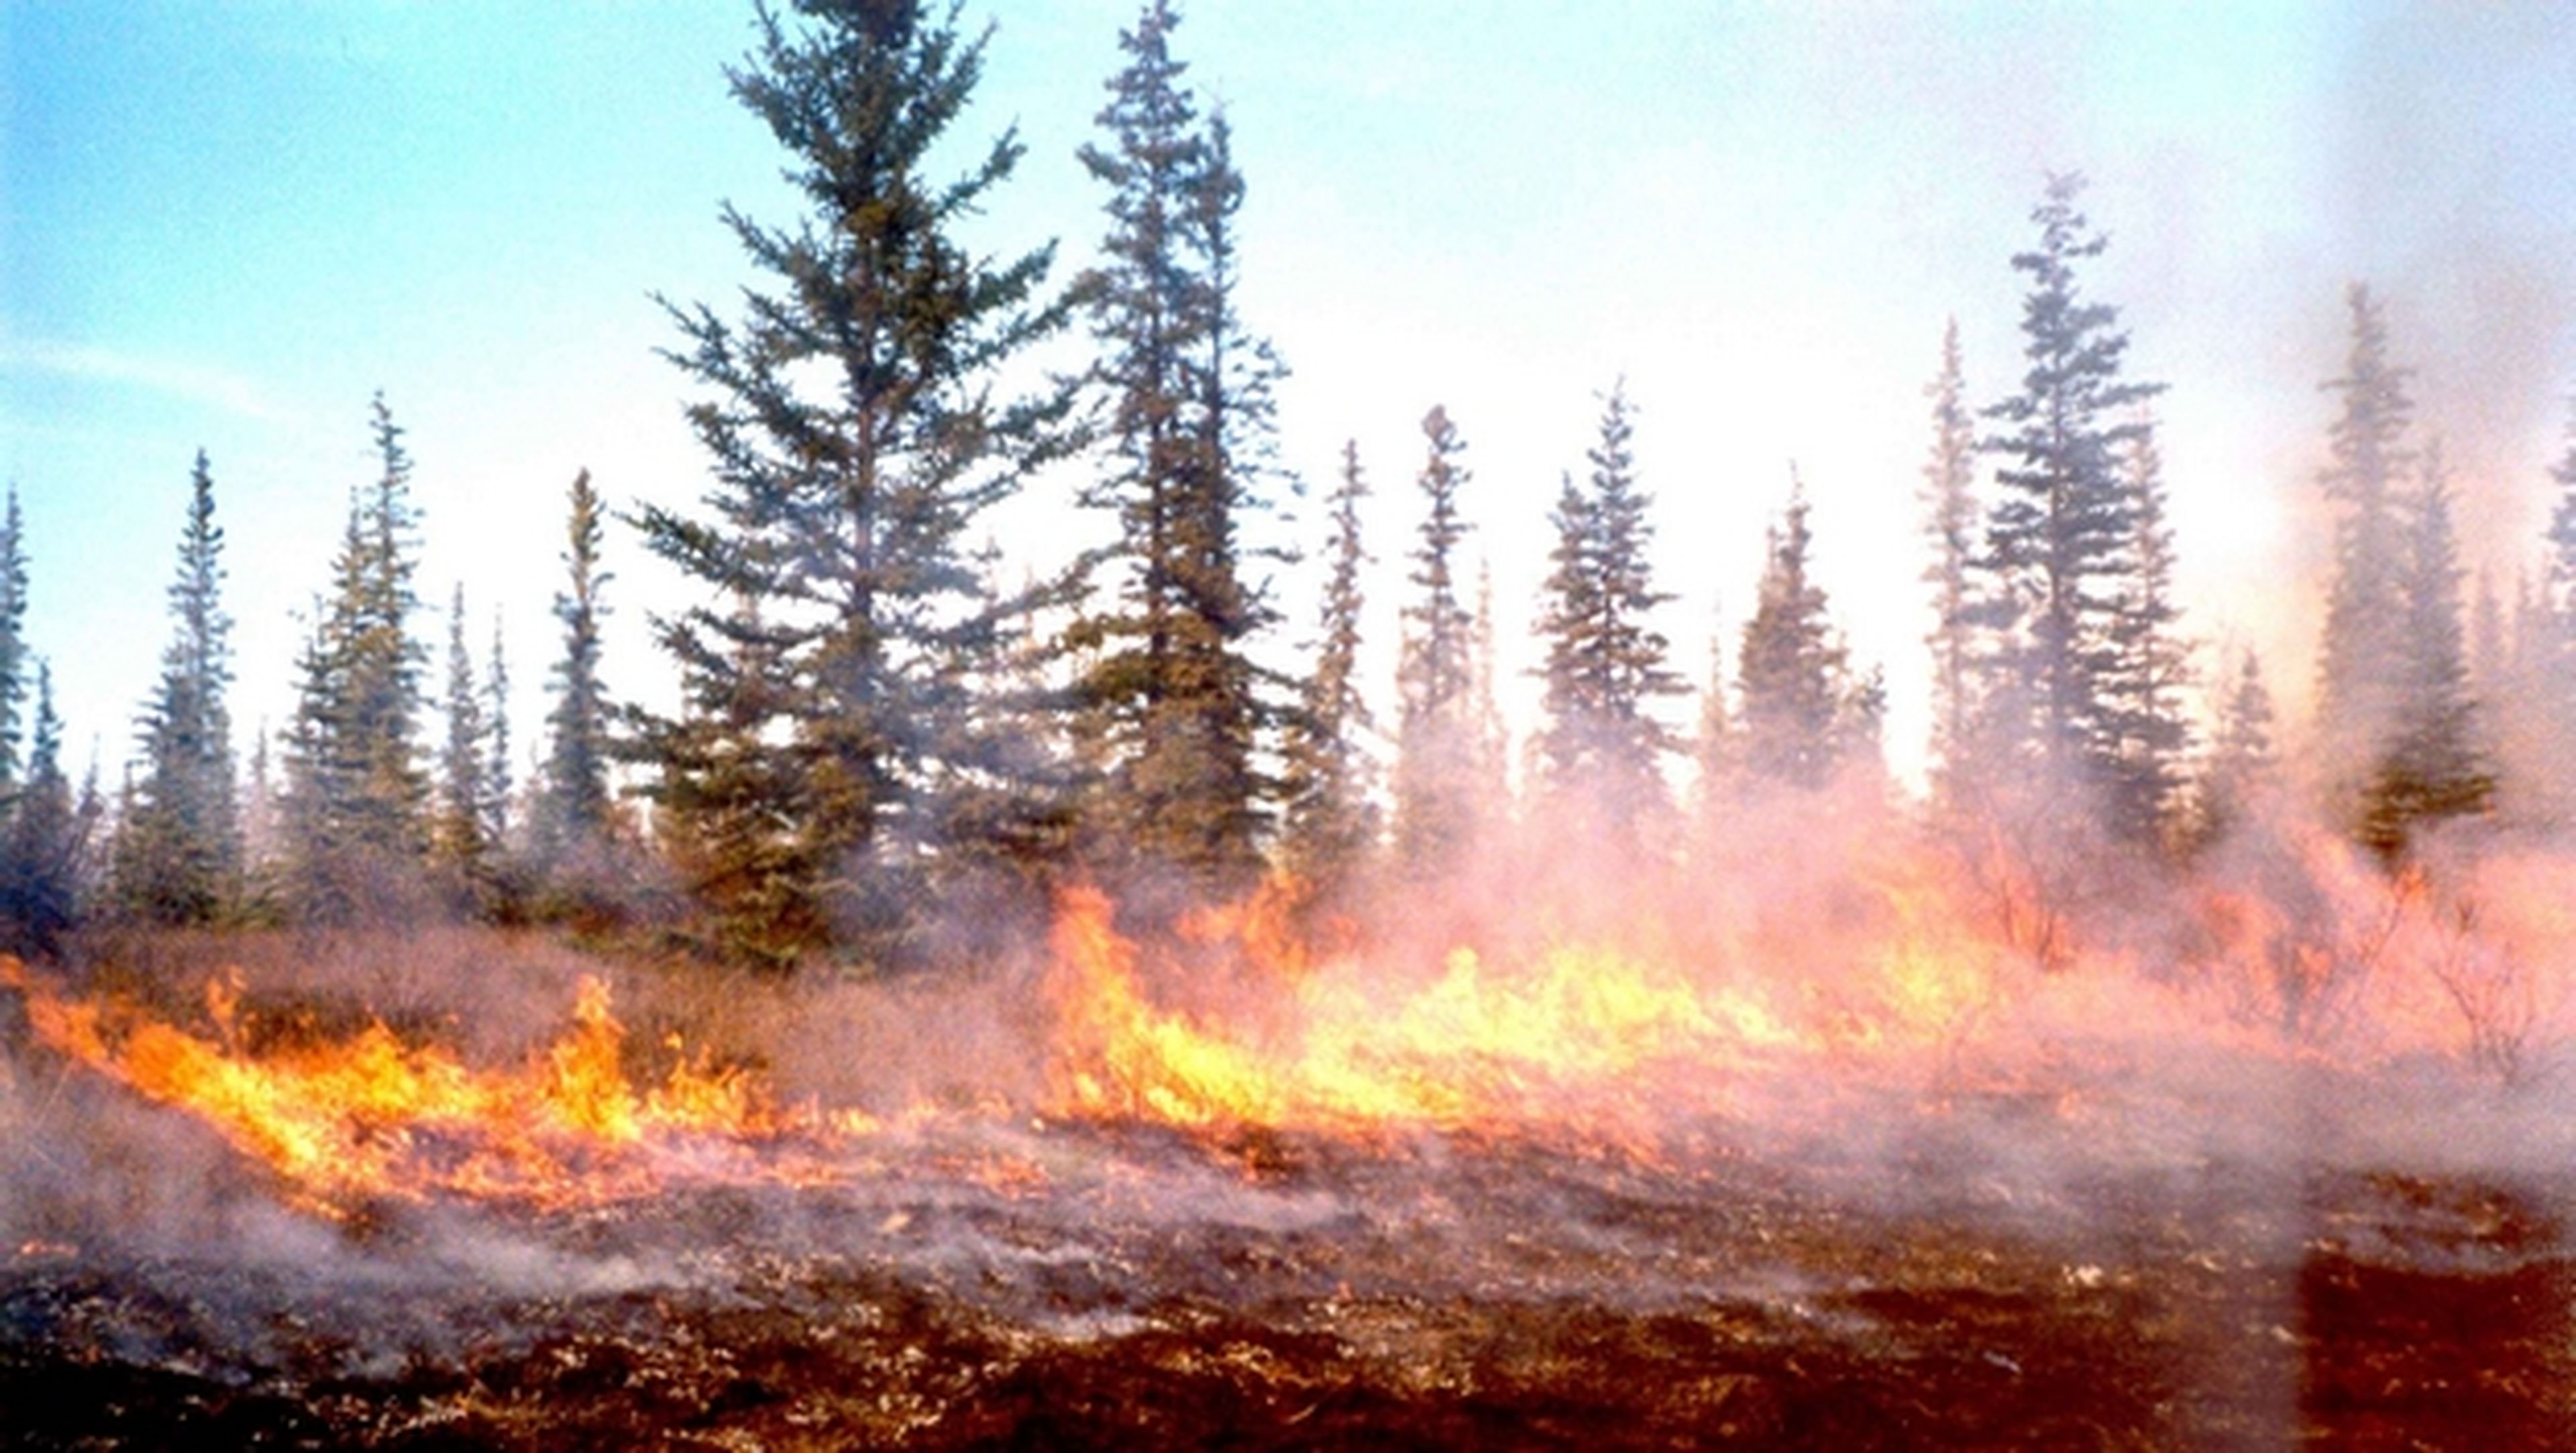 Incendia un bosque para hacerse un selfie y subirlo a Facebook